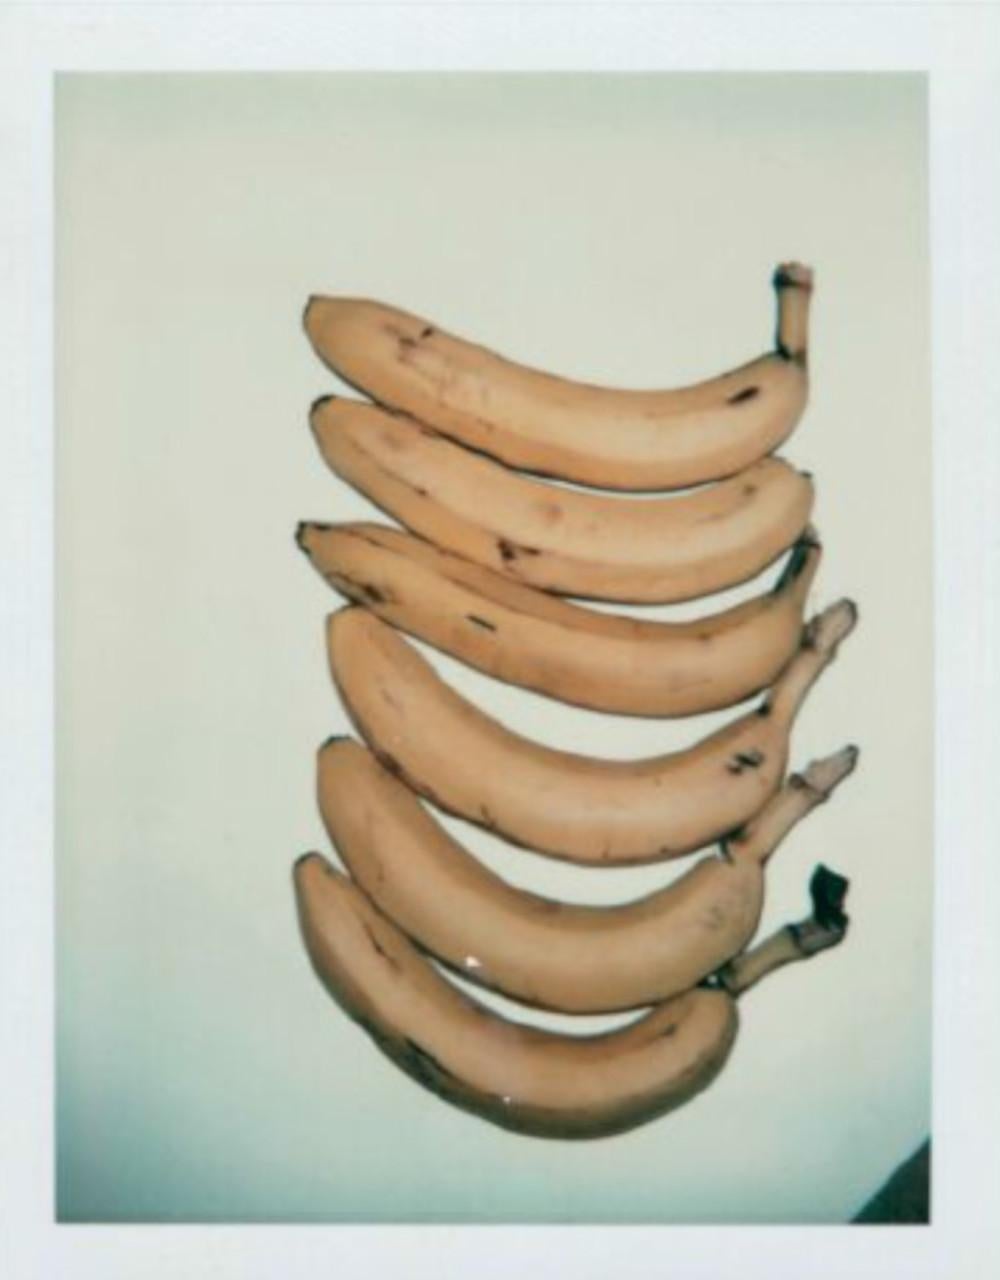 Still-Life Photograph Andy Warhol - Bananas